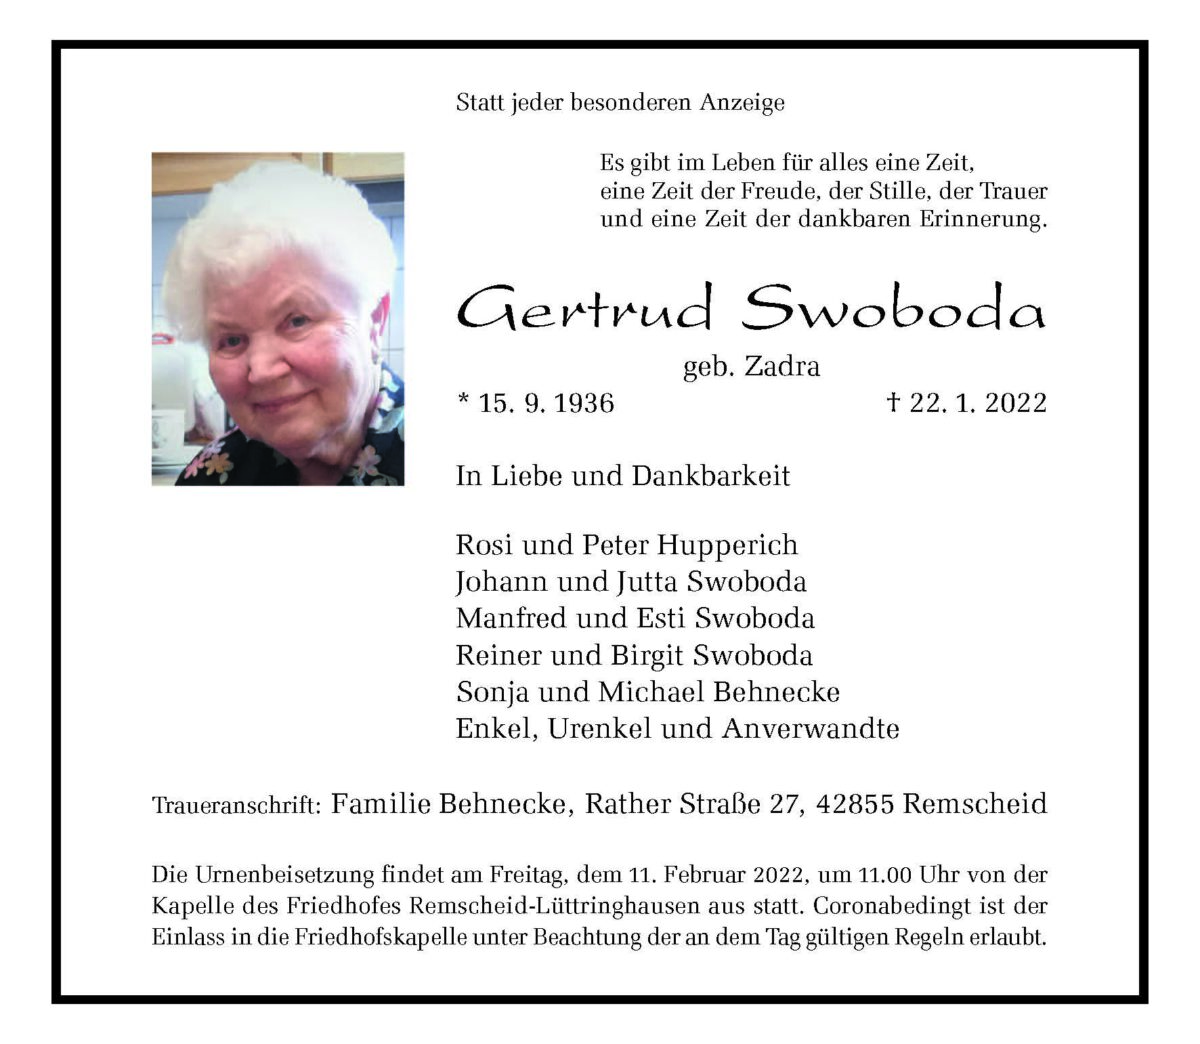 Gertrud Swoboda